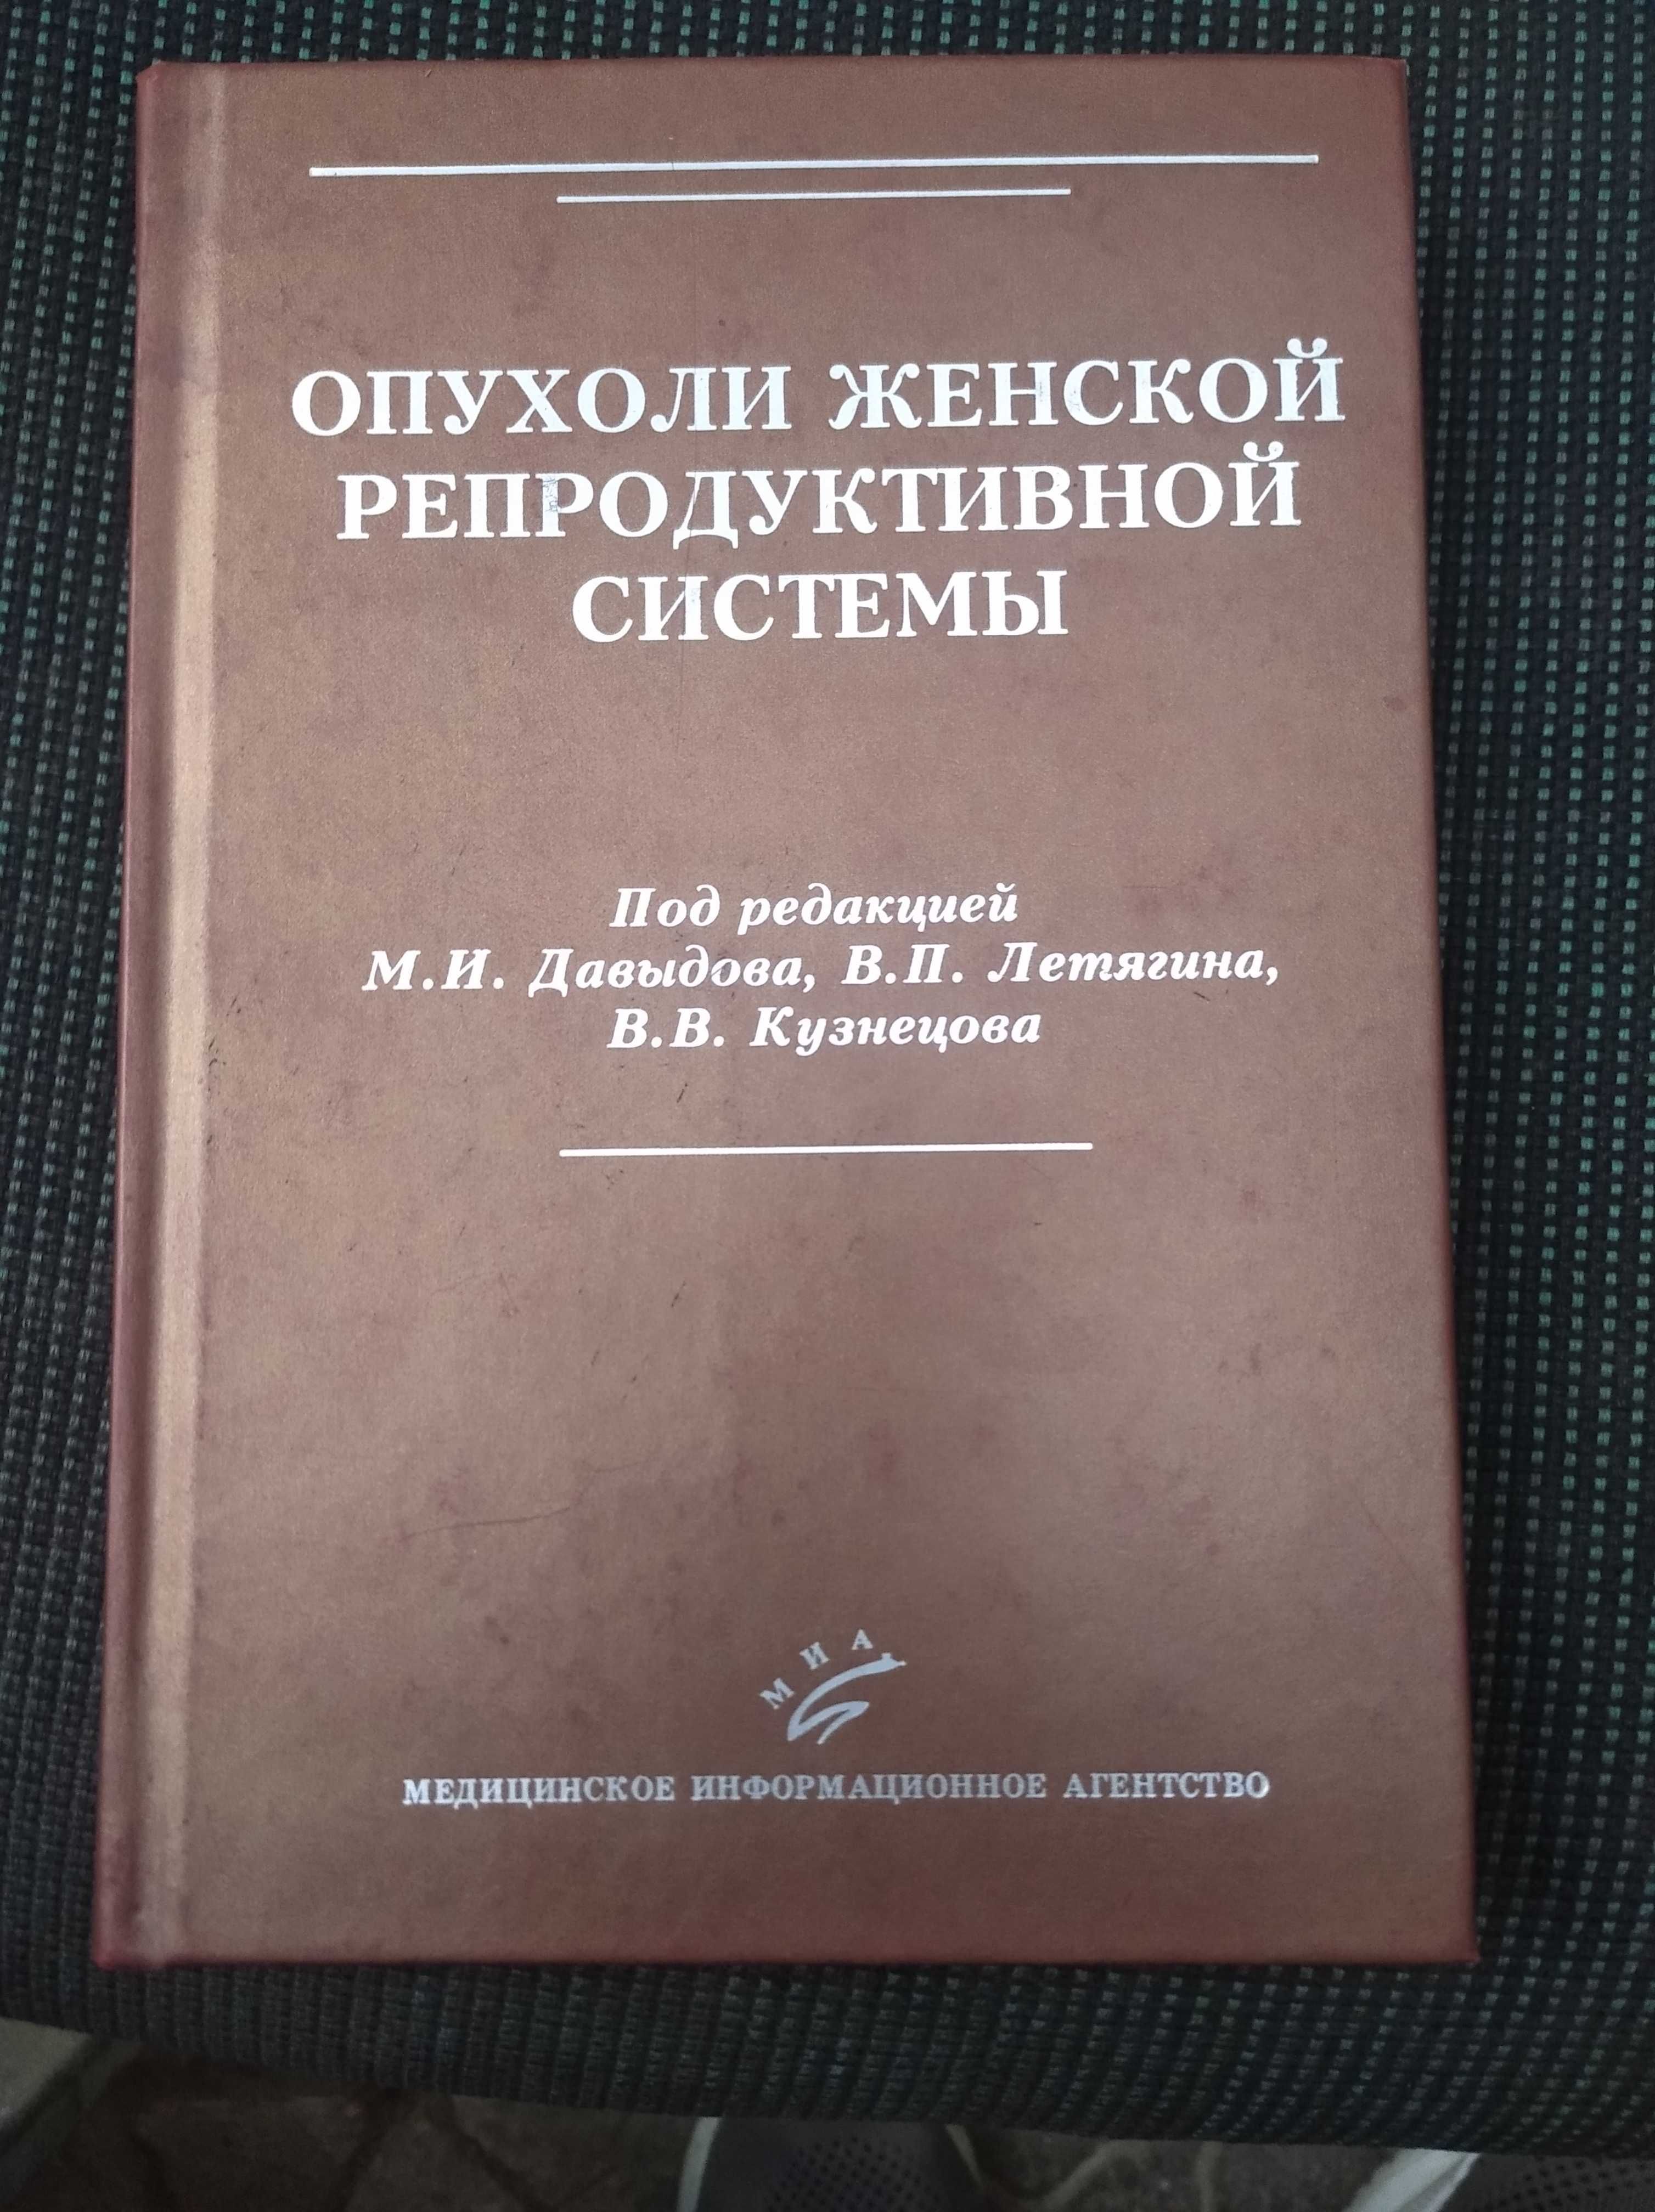 Опухоли женской репродуктивной системы под редакцией М.И.Давыдова